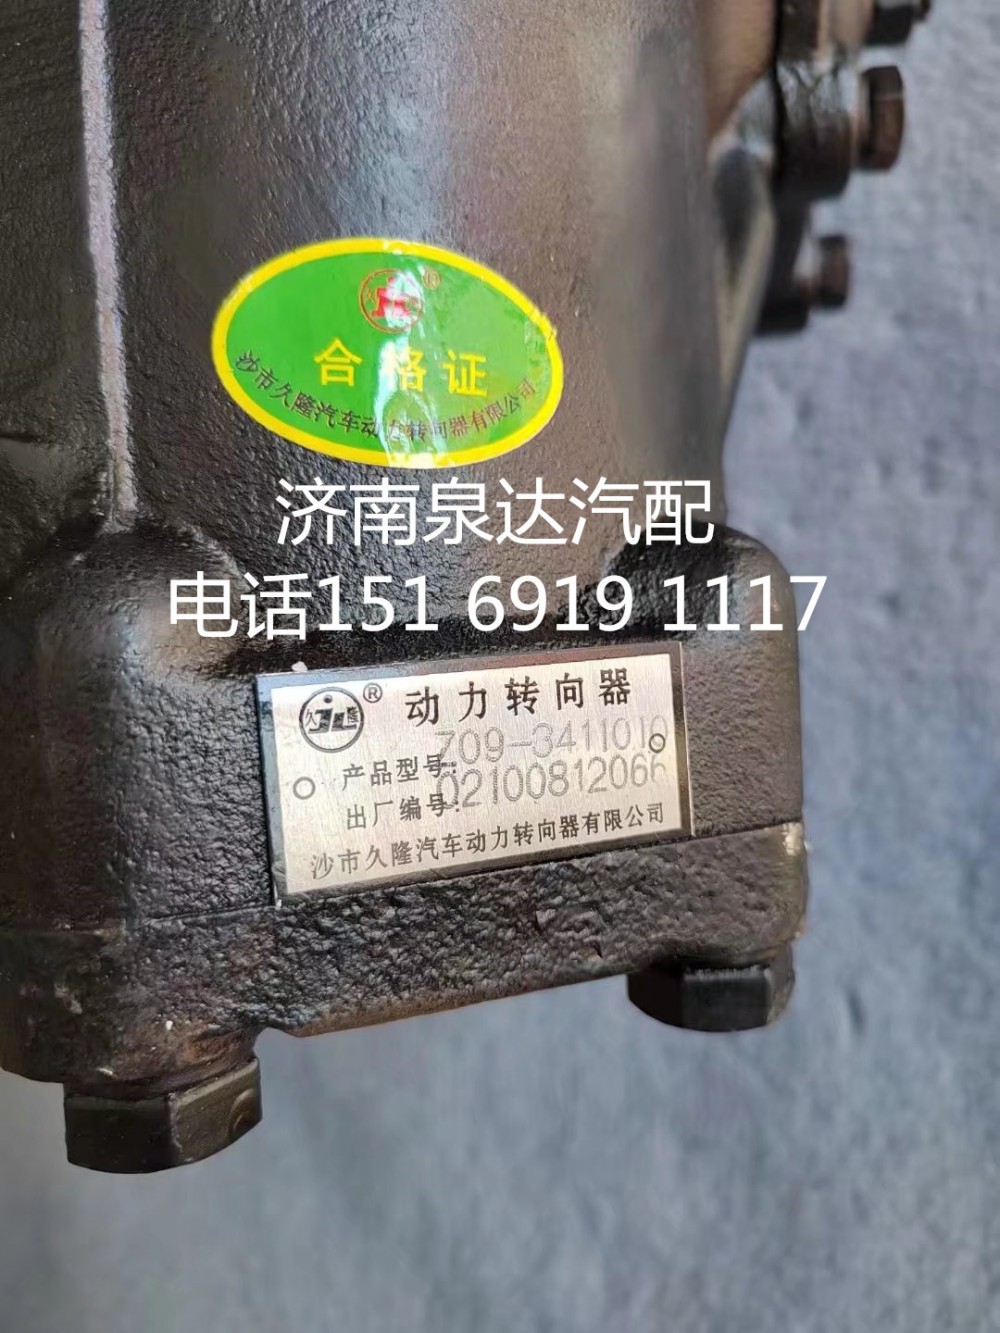 Z09-3411010,方向机总成,济南泉达汽配有限公司